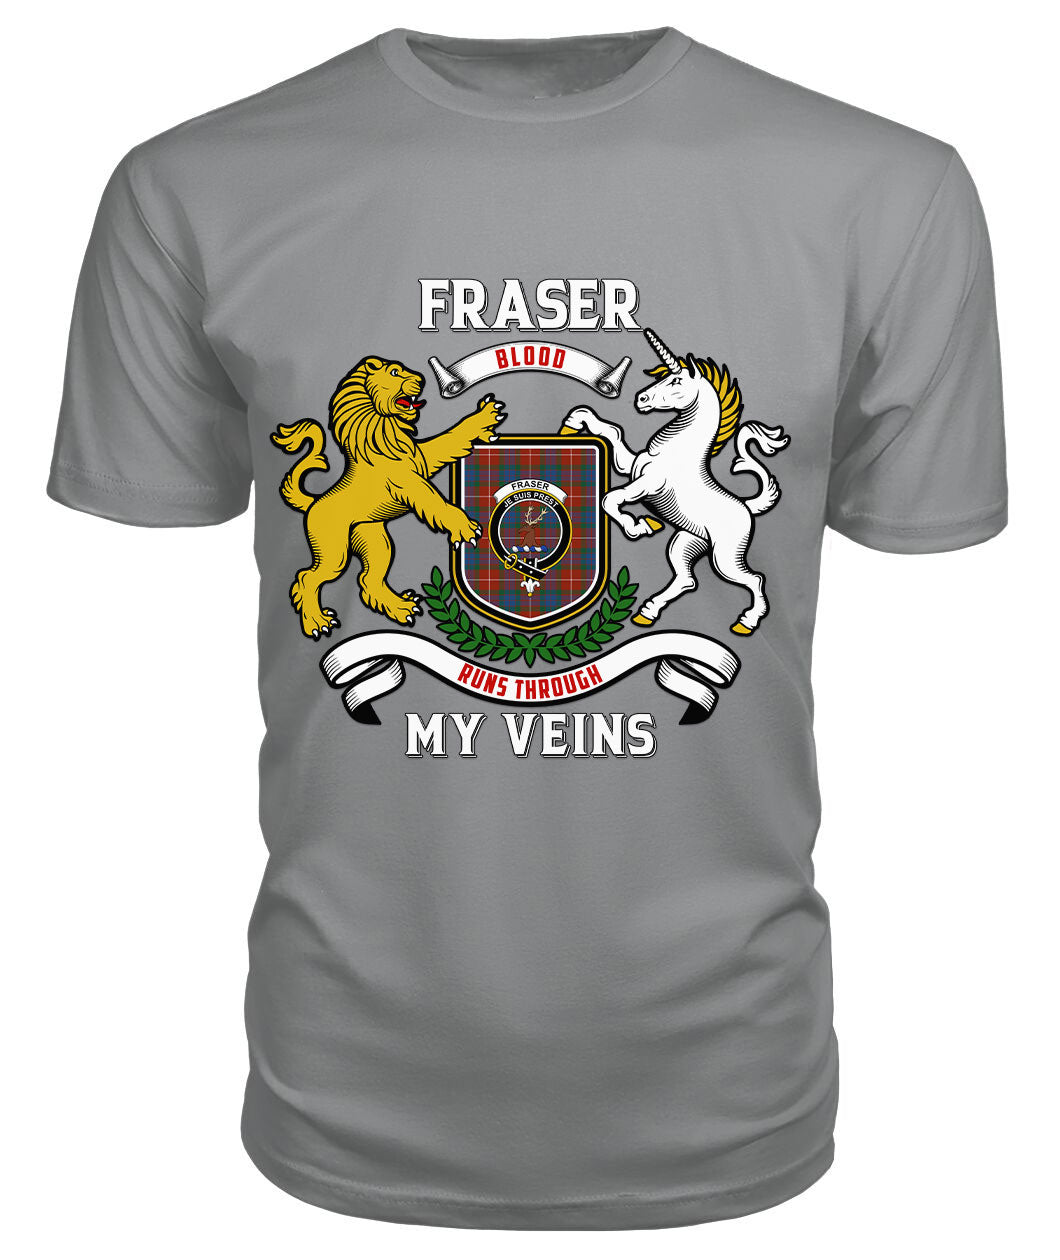 Fraser (of Lovat) Ancient Tartan Crest 2D T-shirt - Blood Runs Through My Veins Style